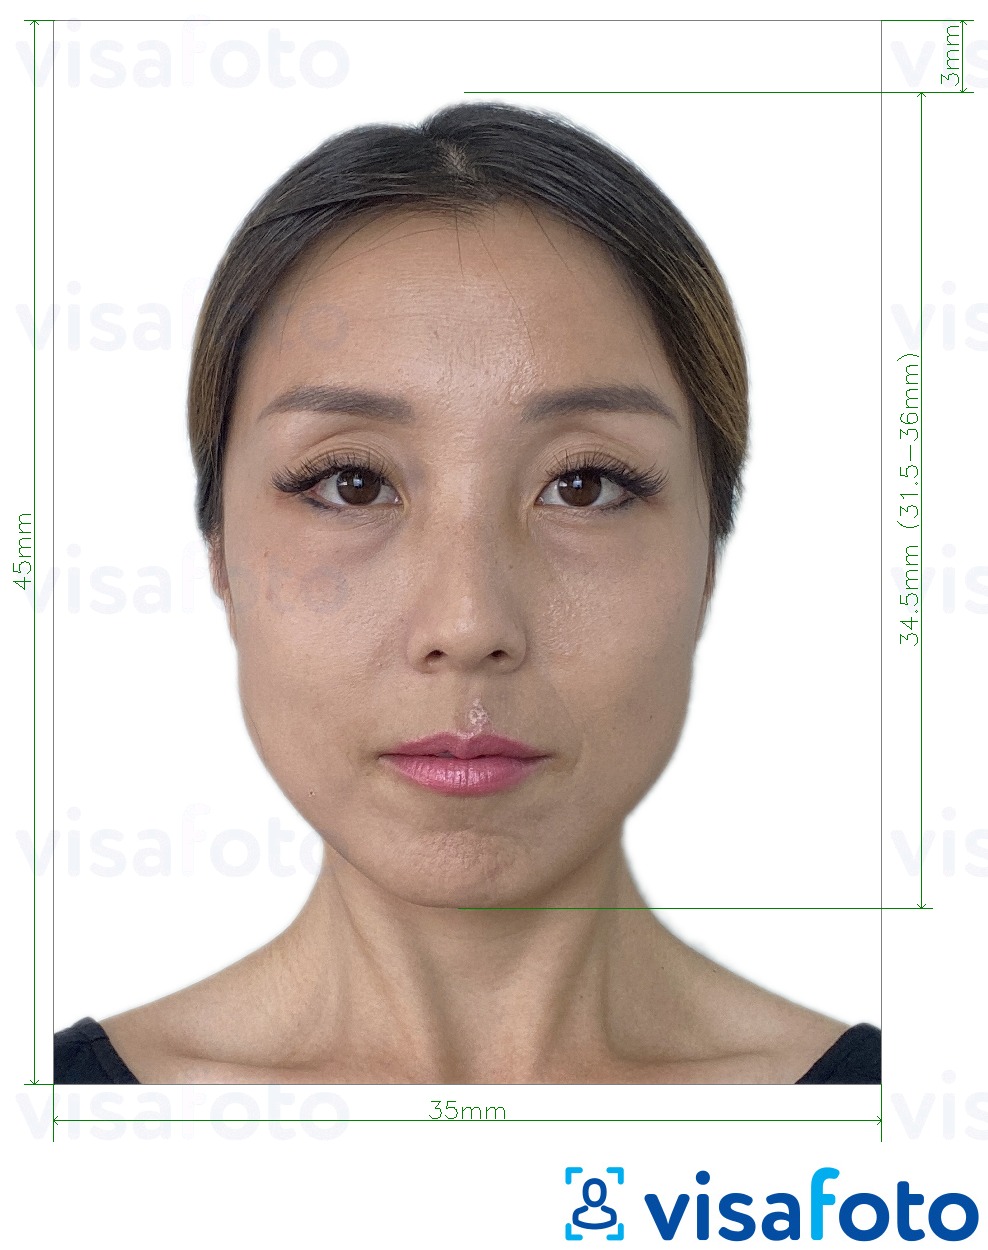 Exemples sur des photos pour Taiwan Visa 35x45 mm (3.5x4.5 cm) avec les spécifications de taille exactes